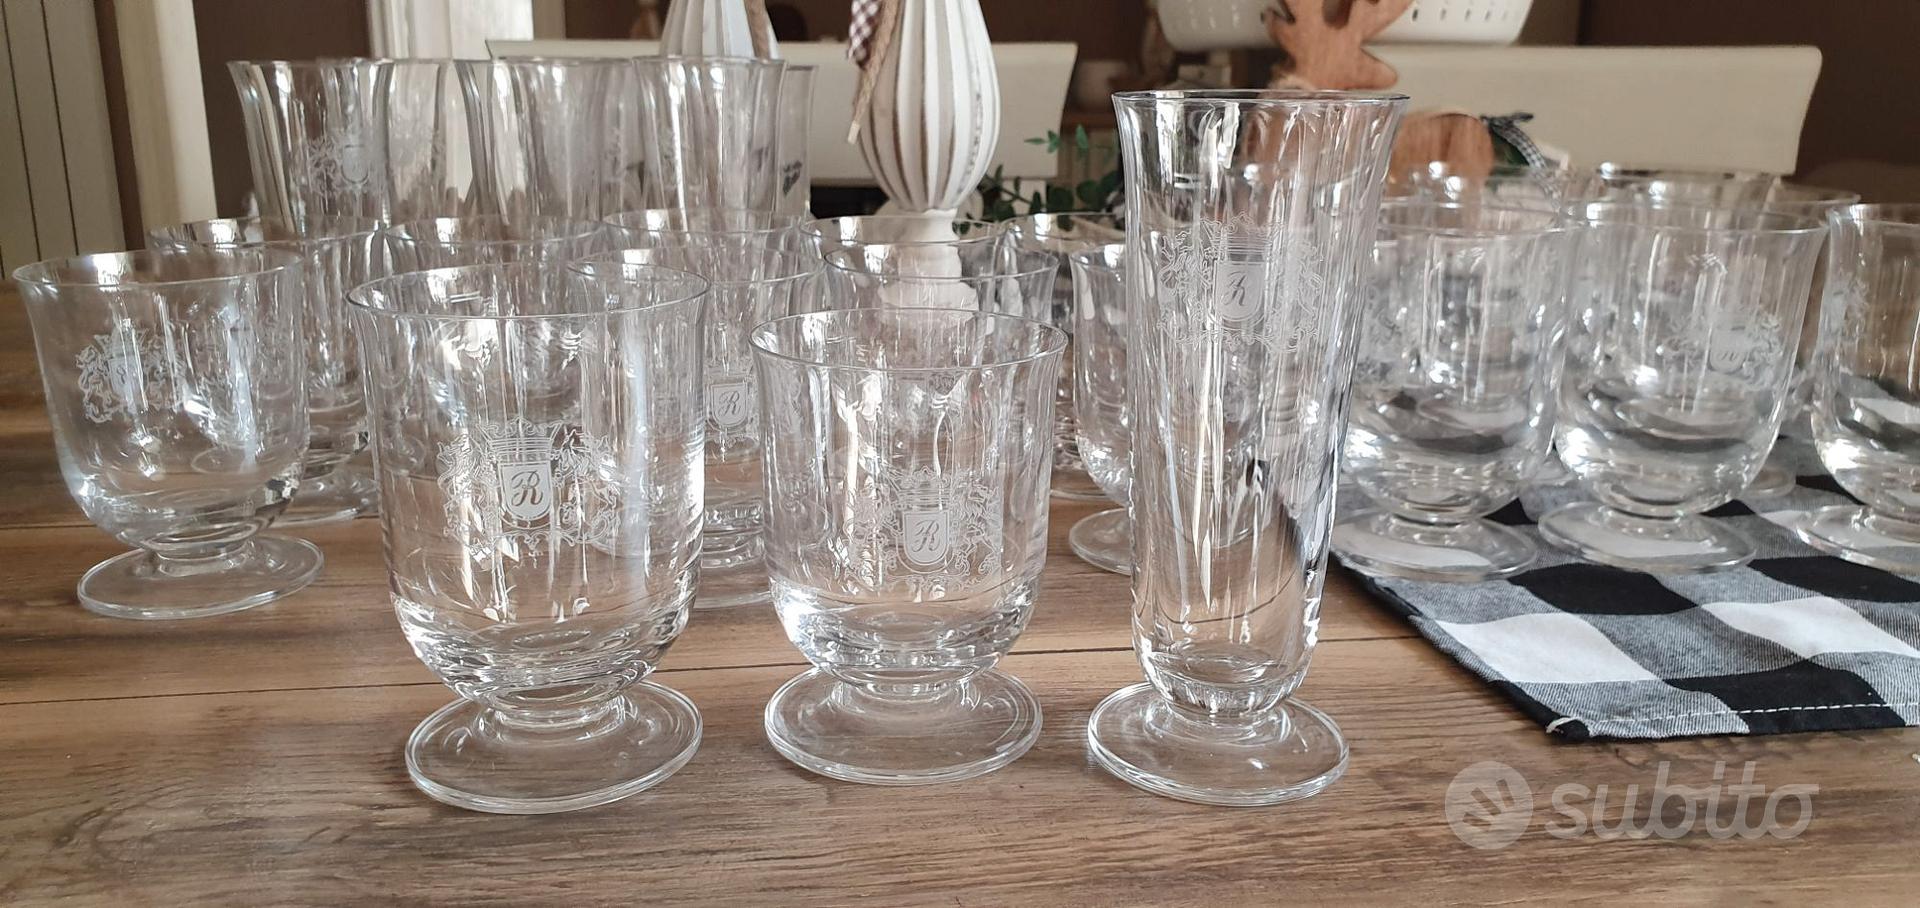 Servizio vintage di bicchieri in cristallo Rothman - Arredamento e